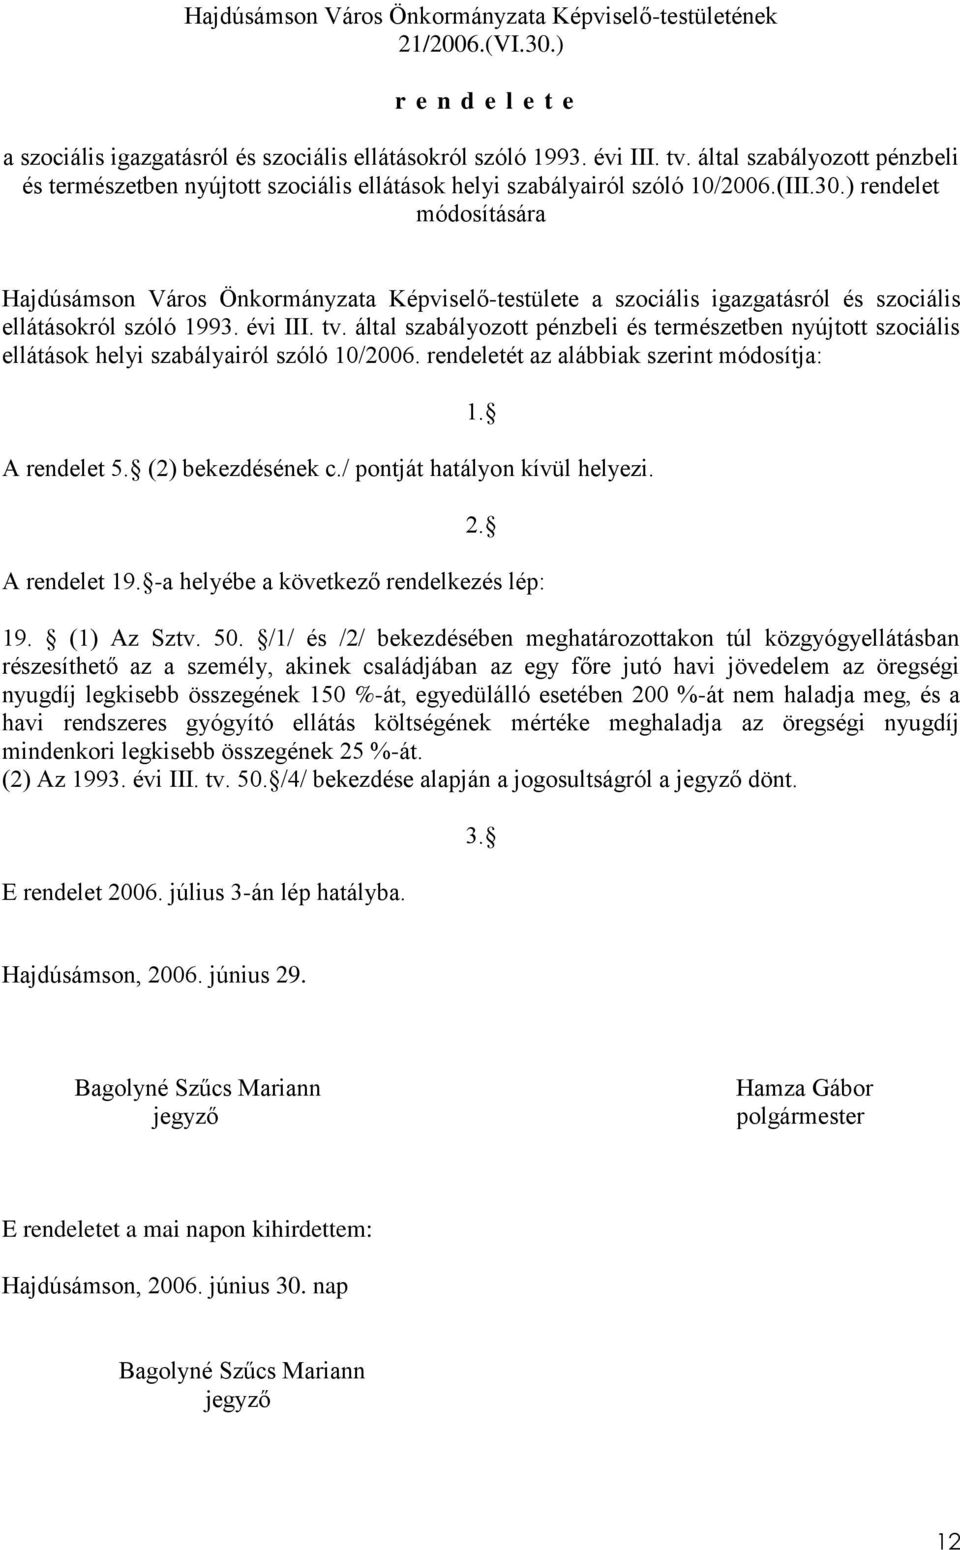 ) rendelet módosítására Hajdúsámson Város Önkormányzata Képviselő-testülete a szociális igazgatásról és szociális ellátásokról szóló 1993. évi III. tv.